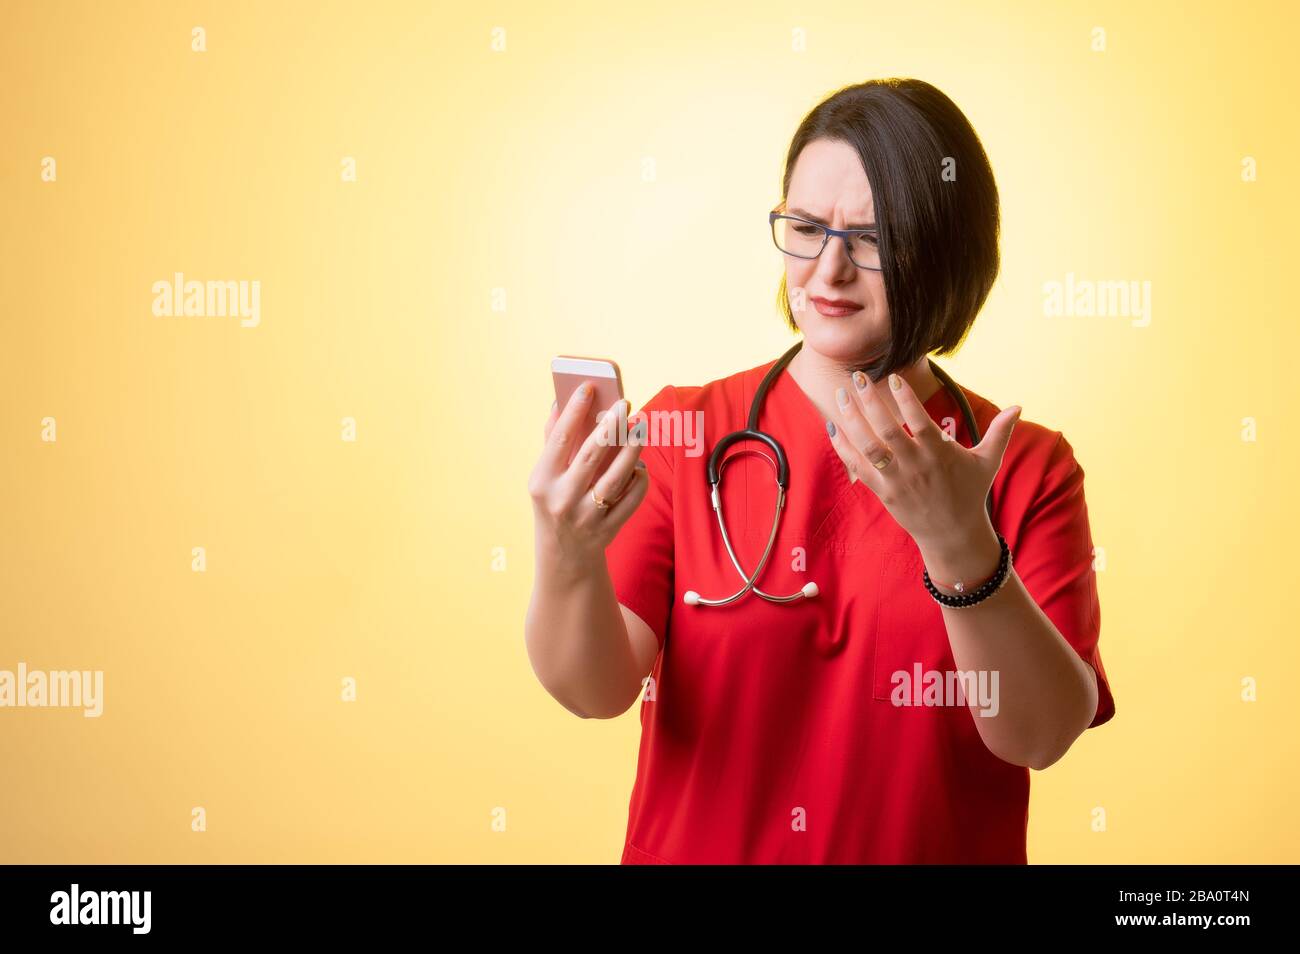 Porträt der schönen Frau Doktor mit Stethoskop mit roten Schruben, mit braunen Haaren, Smartphone halten, SMS schreiben, nervös schauen, auf einem y posieren Stockfoto